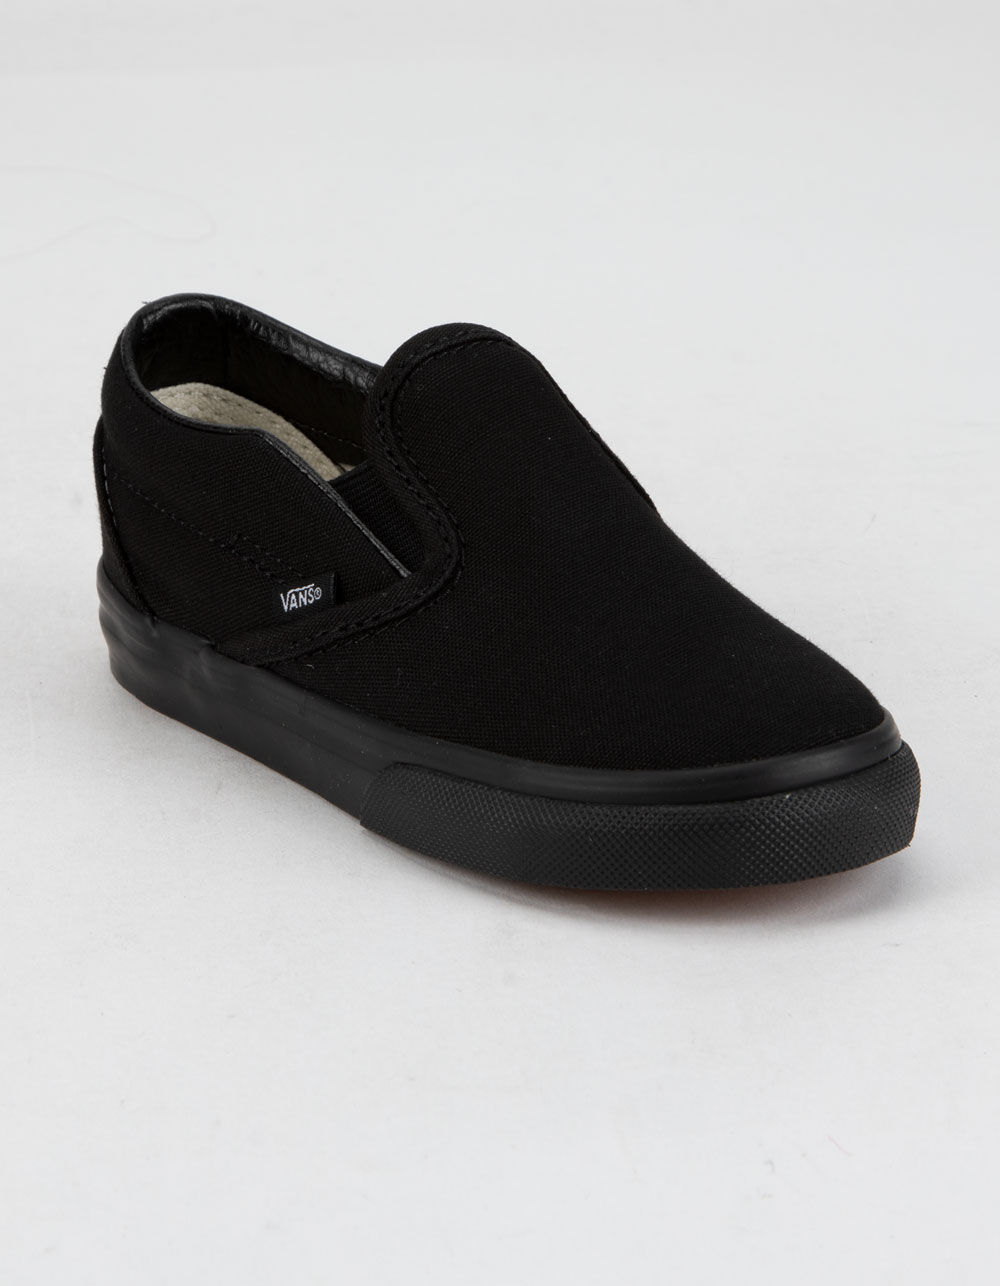 VANS Toddler Classic Slip-On Black Shoes - BLK/BLK | Tillys